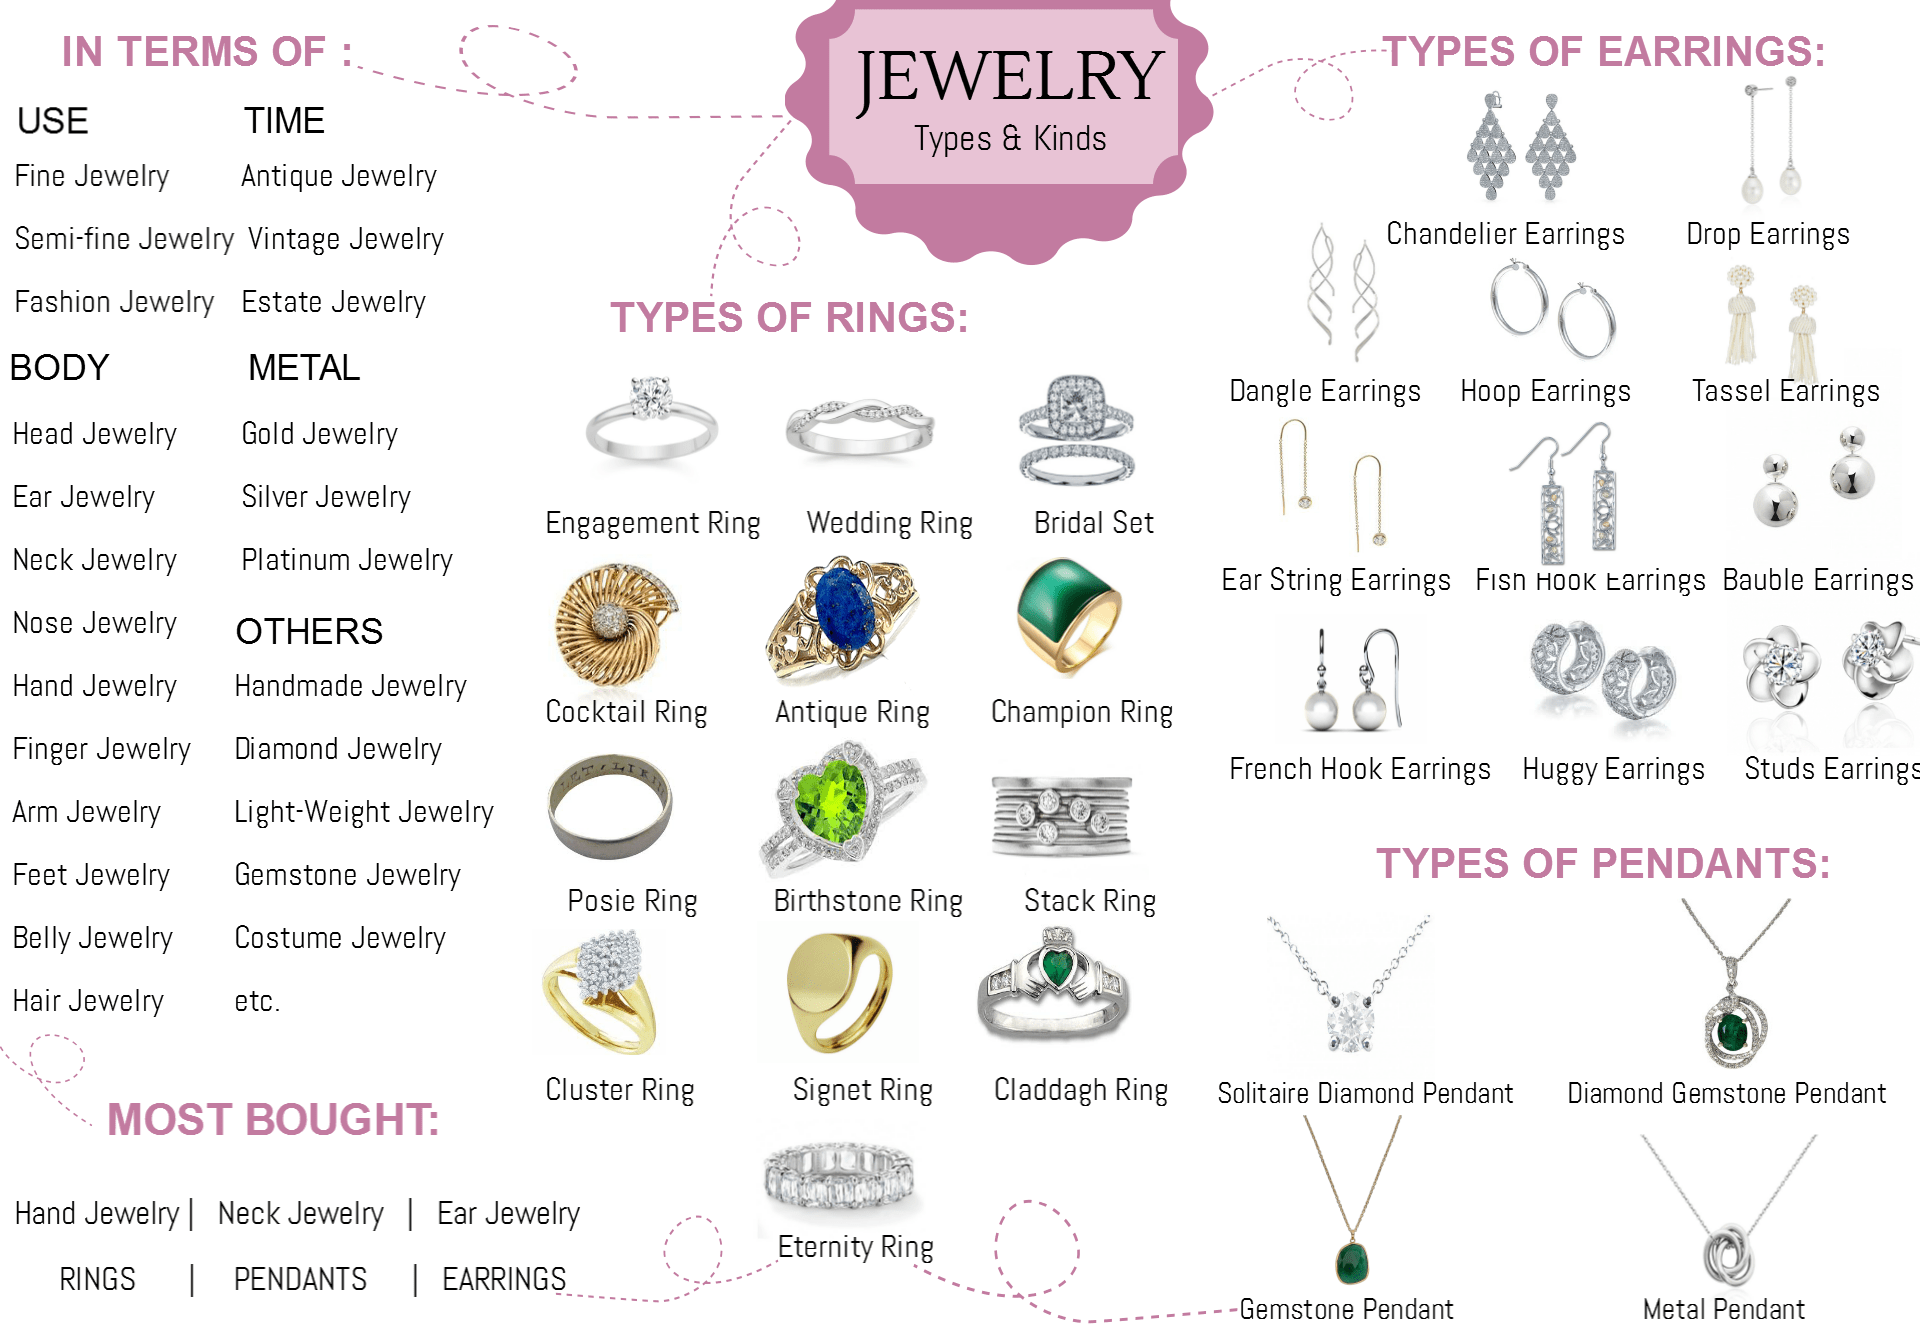 Jewelry types